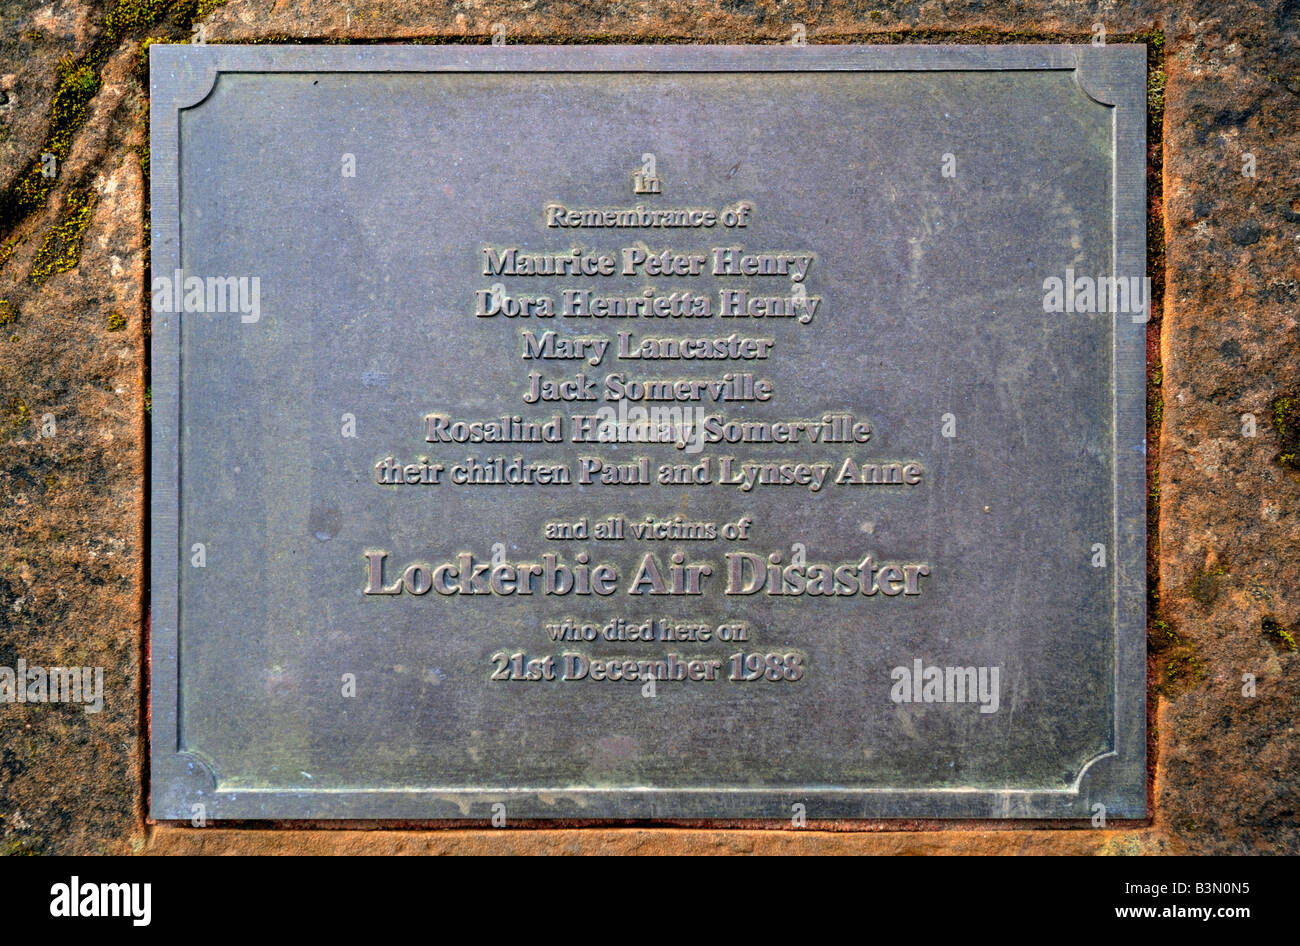 Gedenktafel am Denkmal für die Katastrophe von Lockerbie Luft, 1988.  Sherwood Crescent, Lockerbie, Dumfries and Galloway, Schottland,  Vereinigtes K Stockfotografie - Alamy